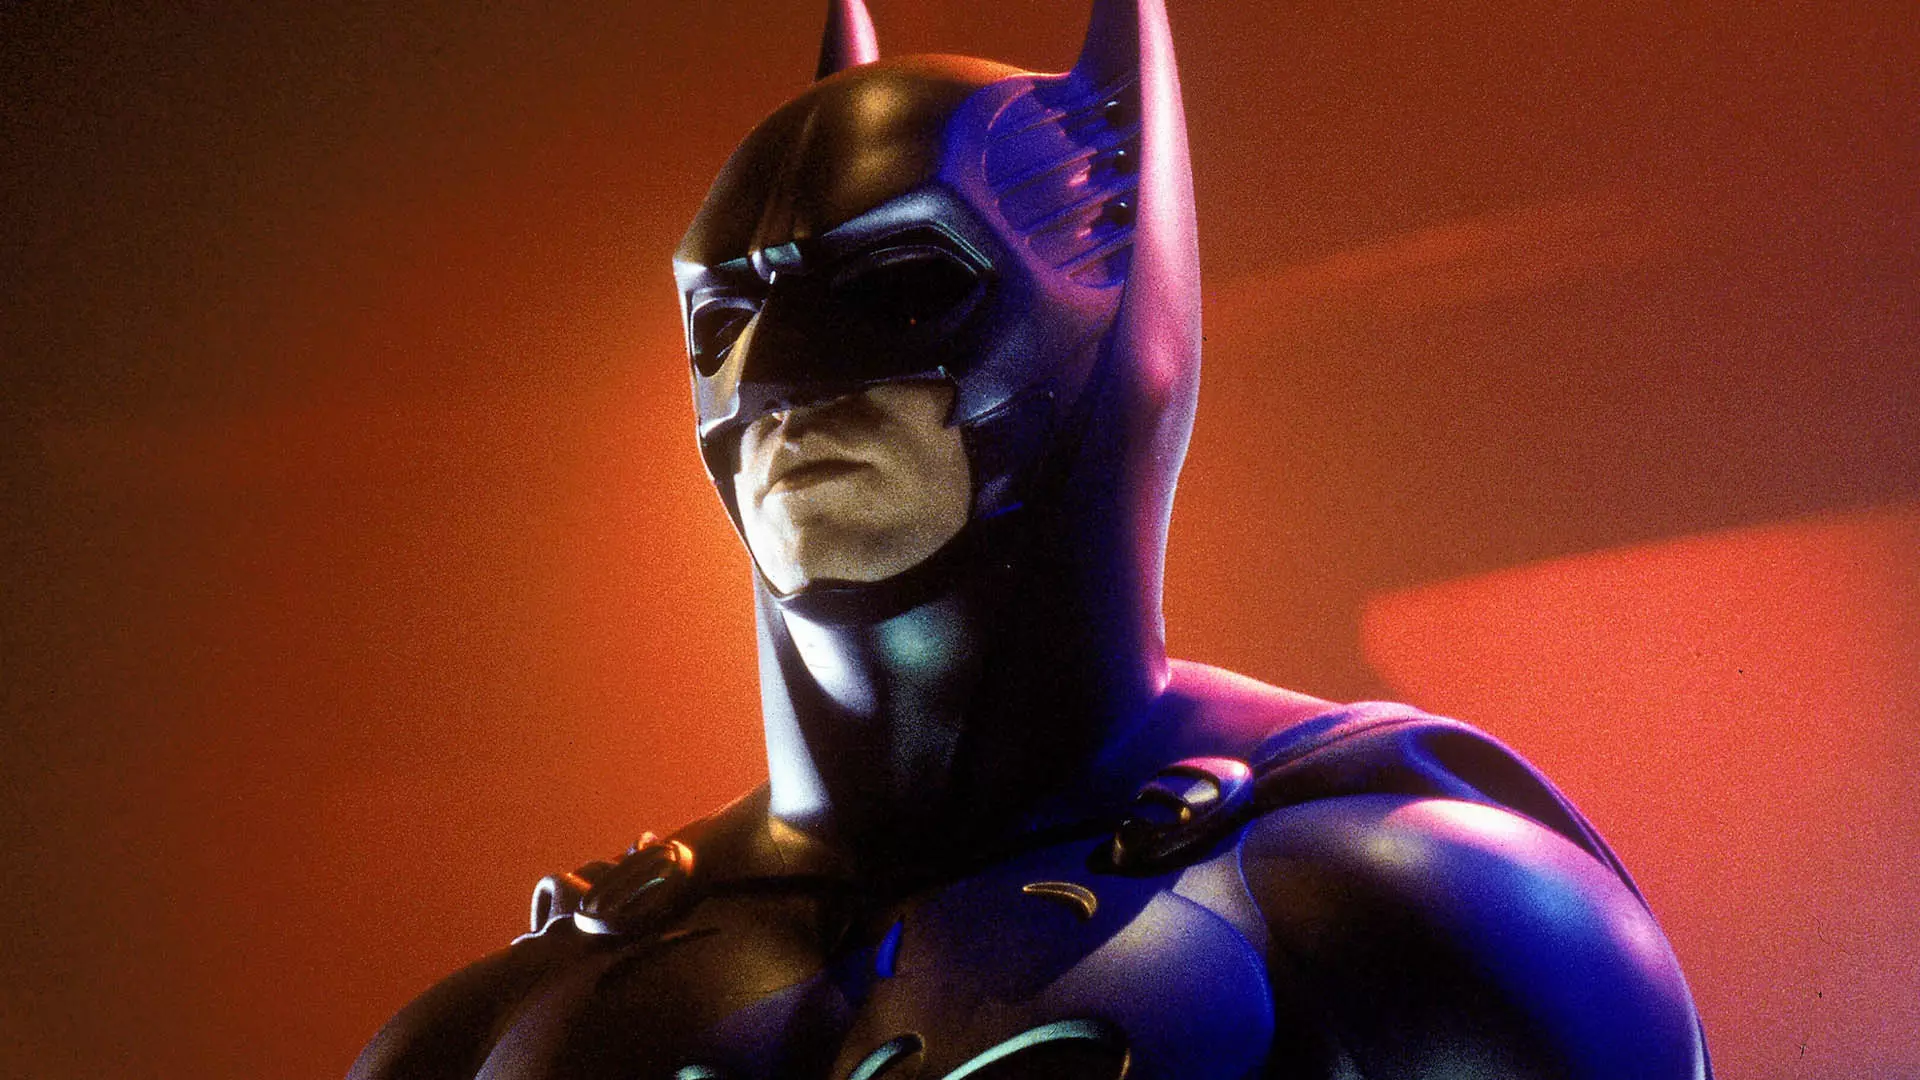 وال کیلمر در نقش بتمن در فیلم Batman Forever